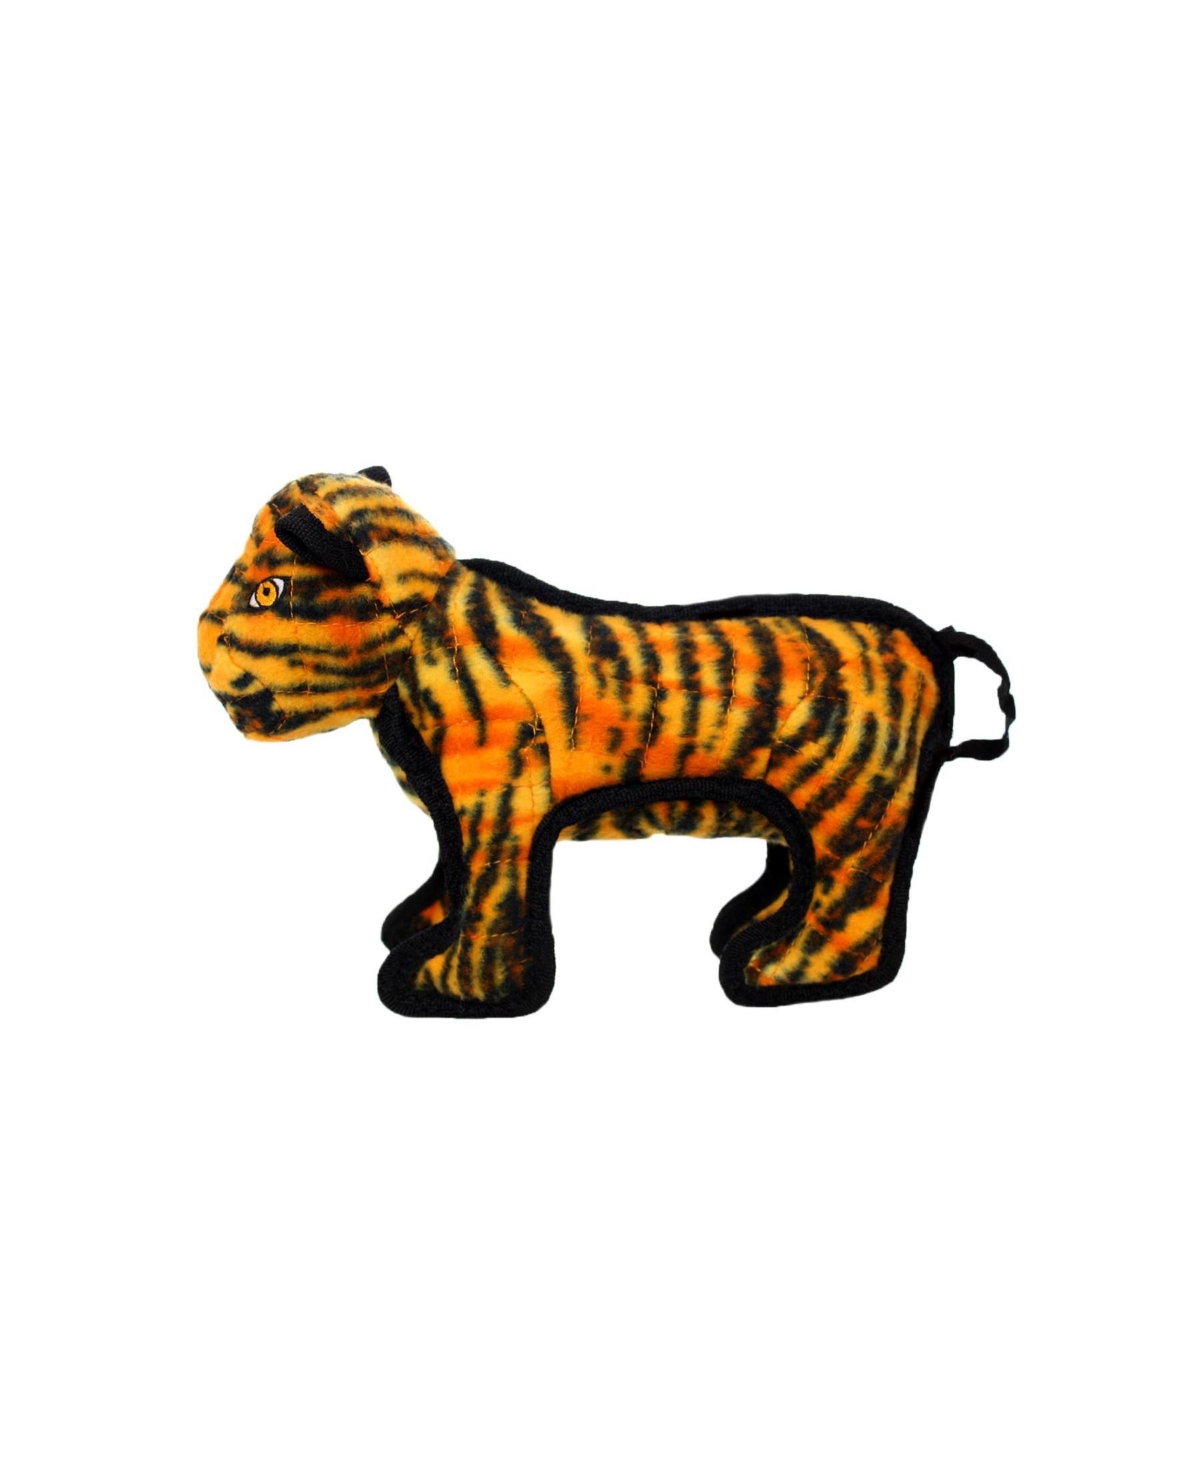 Jr Zoo Tiger, Dog Toy - Orange